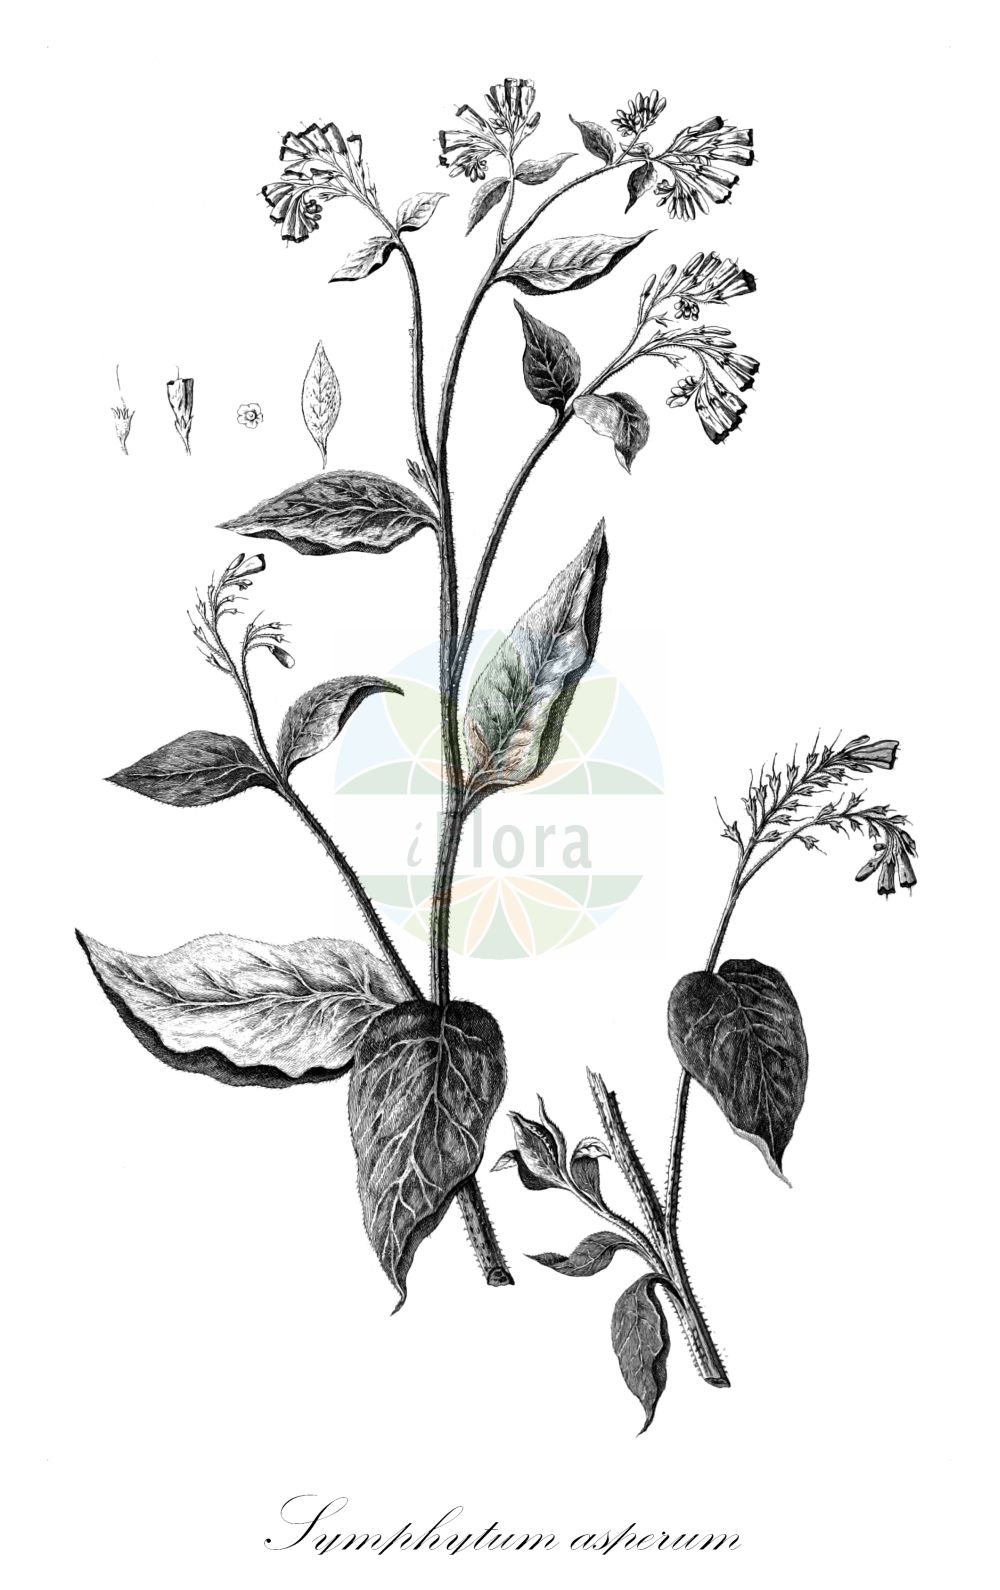 Historische Abbildung von Symphytum asperum (Rough Comfrey). Das Bild zeigt Blatt, Bluete, Frucht und Same. ---- Historical Drawing of Symphytum asperum (Rough Comfrey). The image is showing leaf, flower, fruit and seed.(Symphytum asperum,Rough Comfrey,Symphytum armeniacum,Symphytum asperum,Symphytum asperum var. armeniacum,Symphytum,Beinwell,Comfrey,Boraginaceae,Raublattgewächse,Forget-me-Not family,Blatt,Bluete,Frucht,Same,leaf,flower,fruit,seed,Nova acta Academiae scientiarum imperialis petropolitanae (1783-1802))